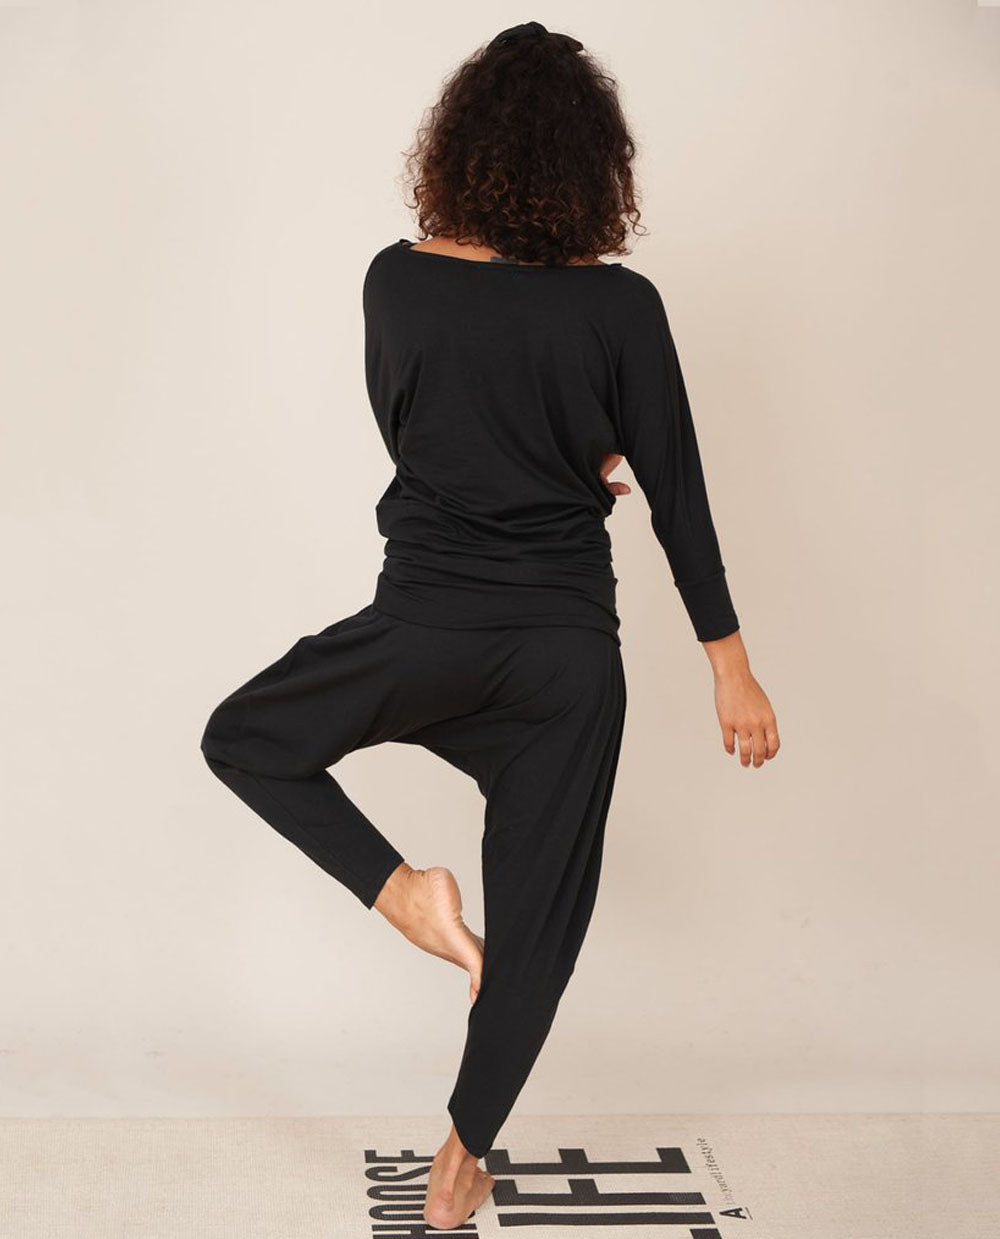 Miakoda Organic Cotton Yoga Batwing Top In Black